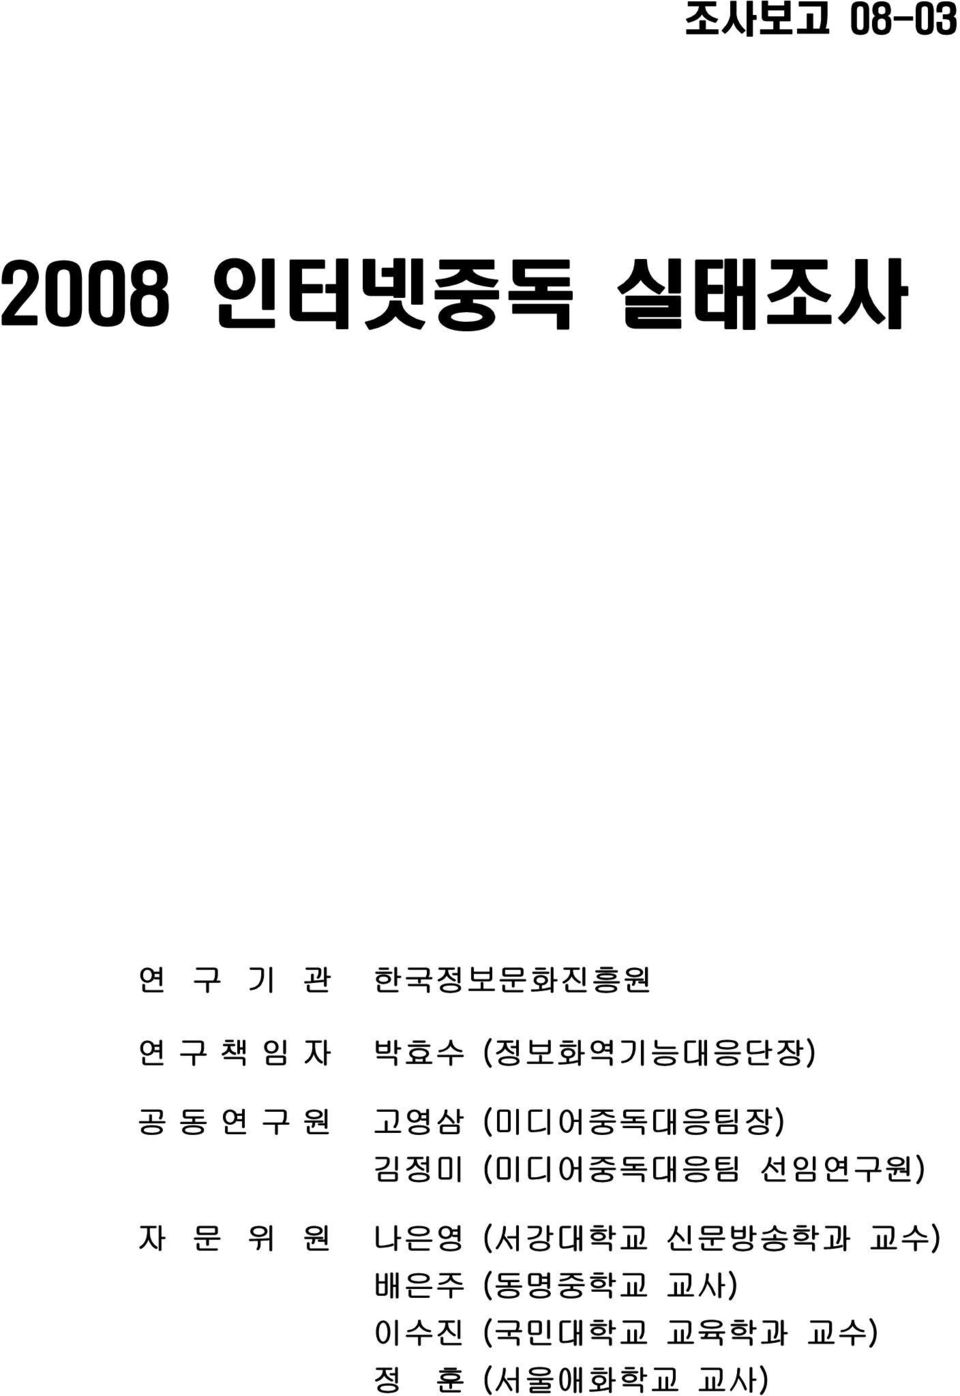 김정미 (미디어중독대응팀 선임연구원) 자 문 위 원 나은영 (서강대학교 신문방송학과